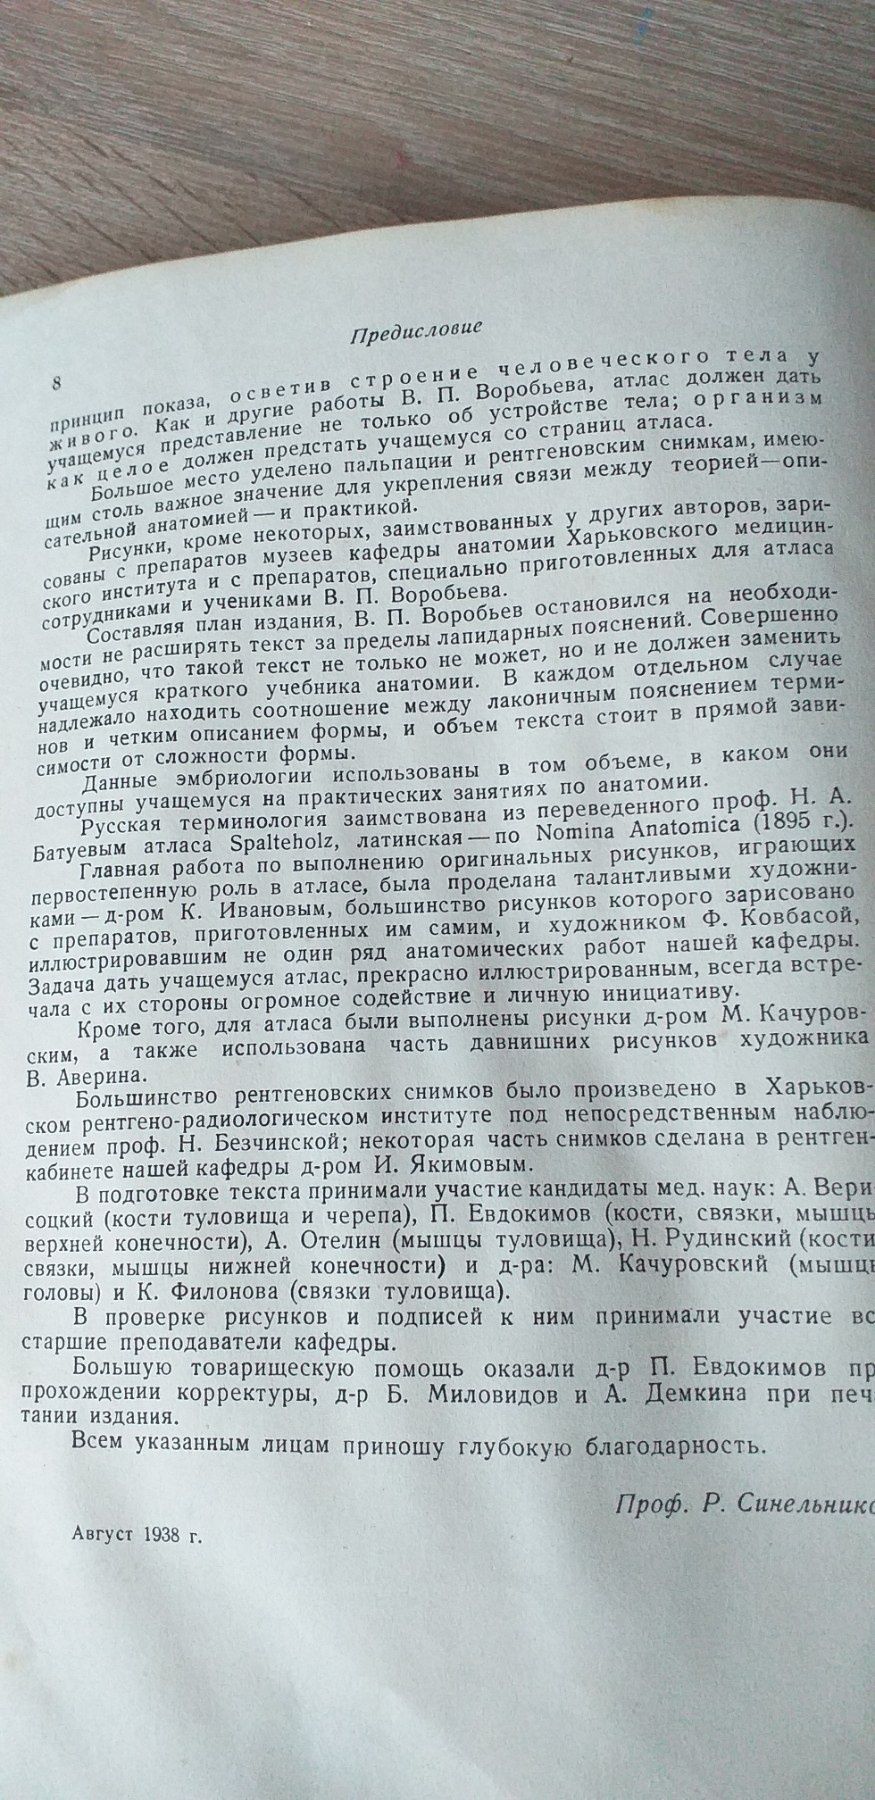 Анатомия Человека 1938г Атлас В.П Воробьёв и Р.Д Синеников